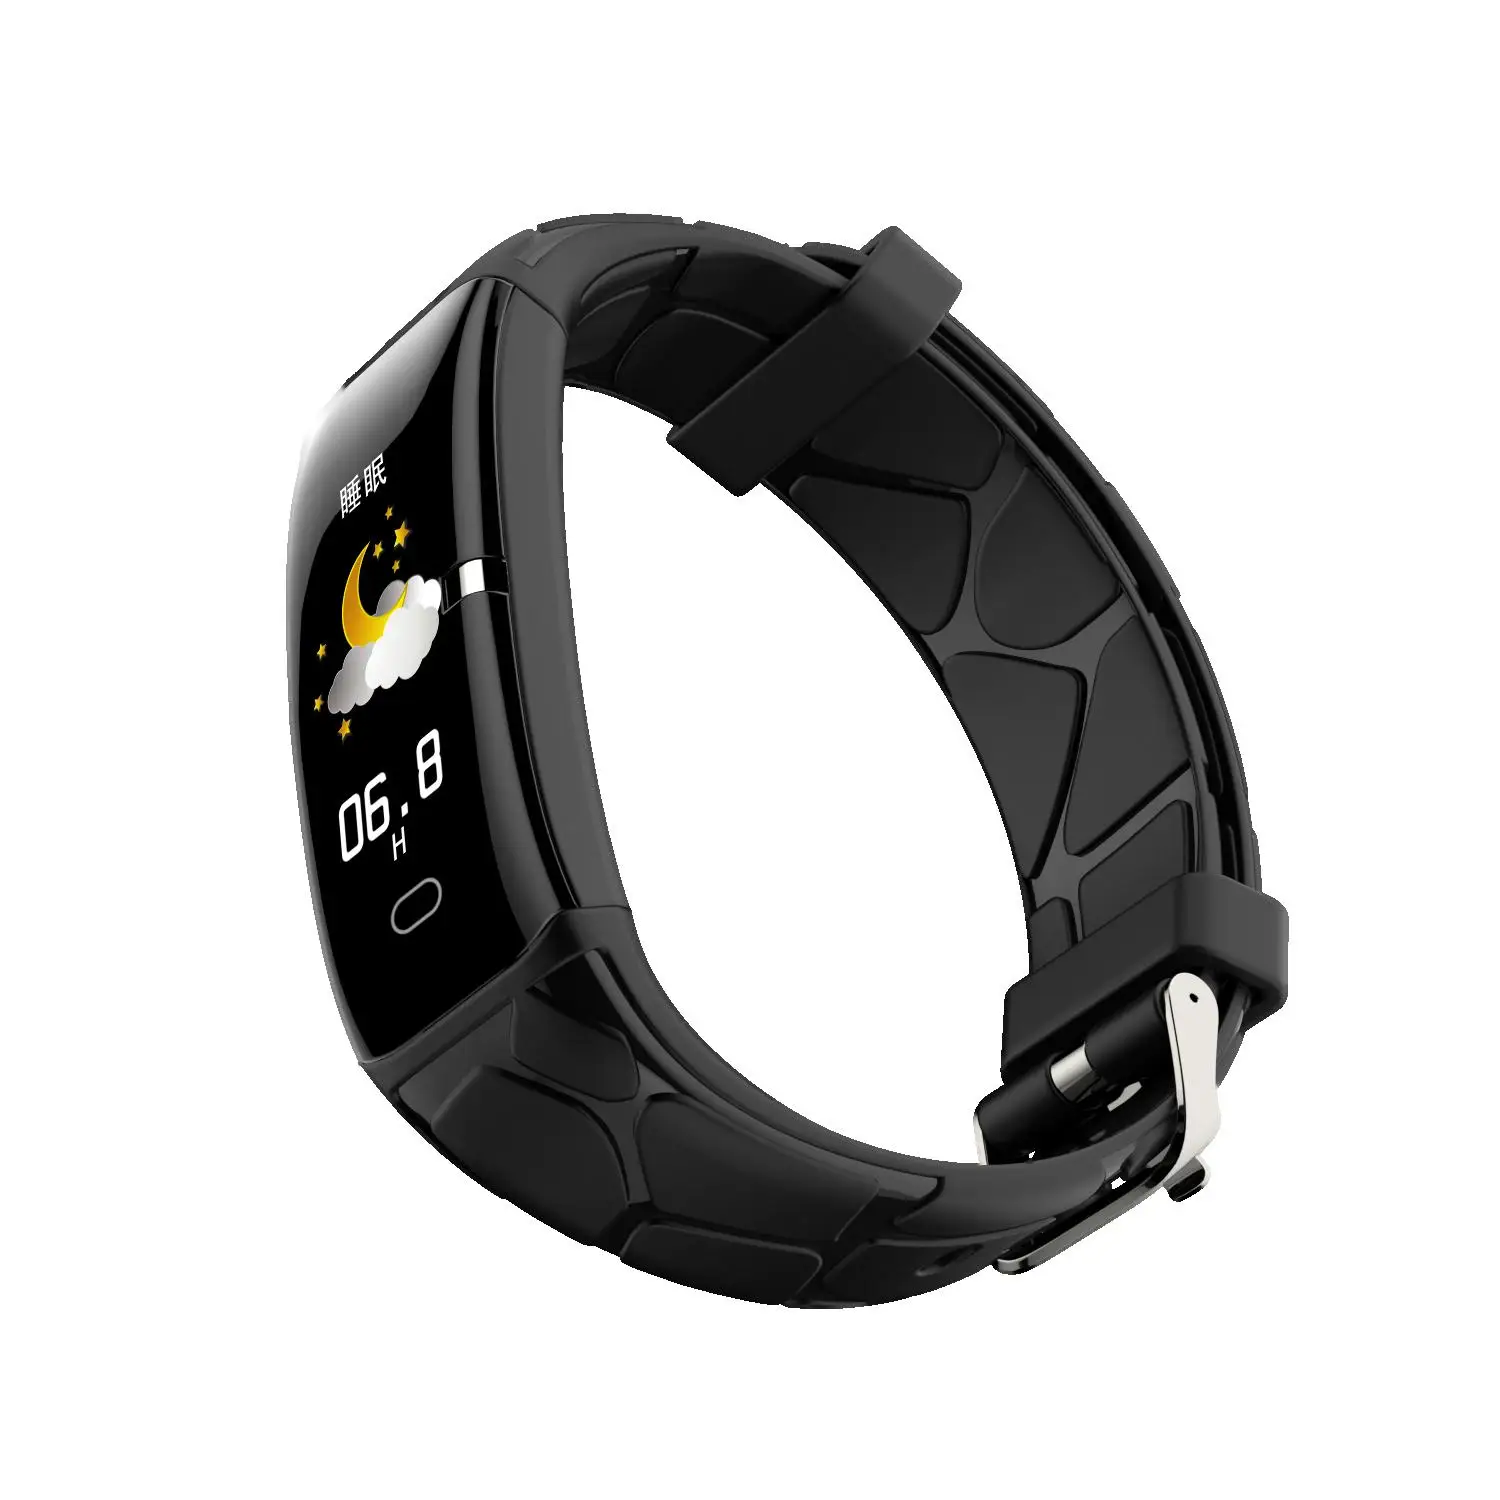 Billig Sport IP67 wasserdichte E58 smart armband 0,96 zoll farbe bildschirm blutdruck schrittzähler schlaf überwachung fitness tracker